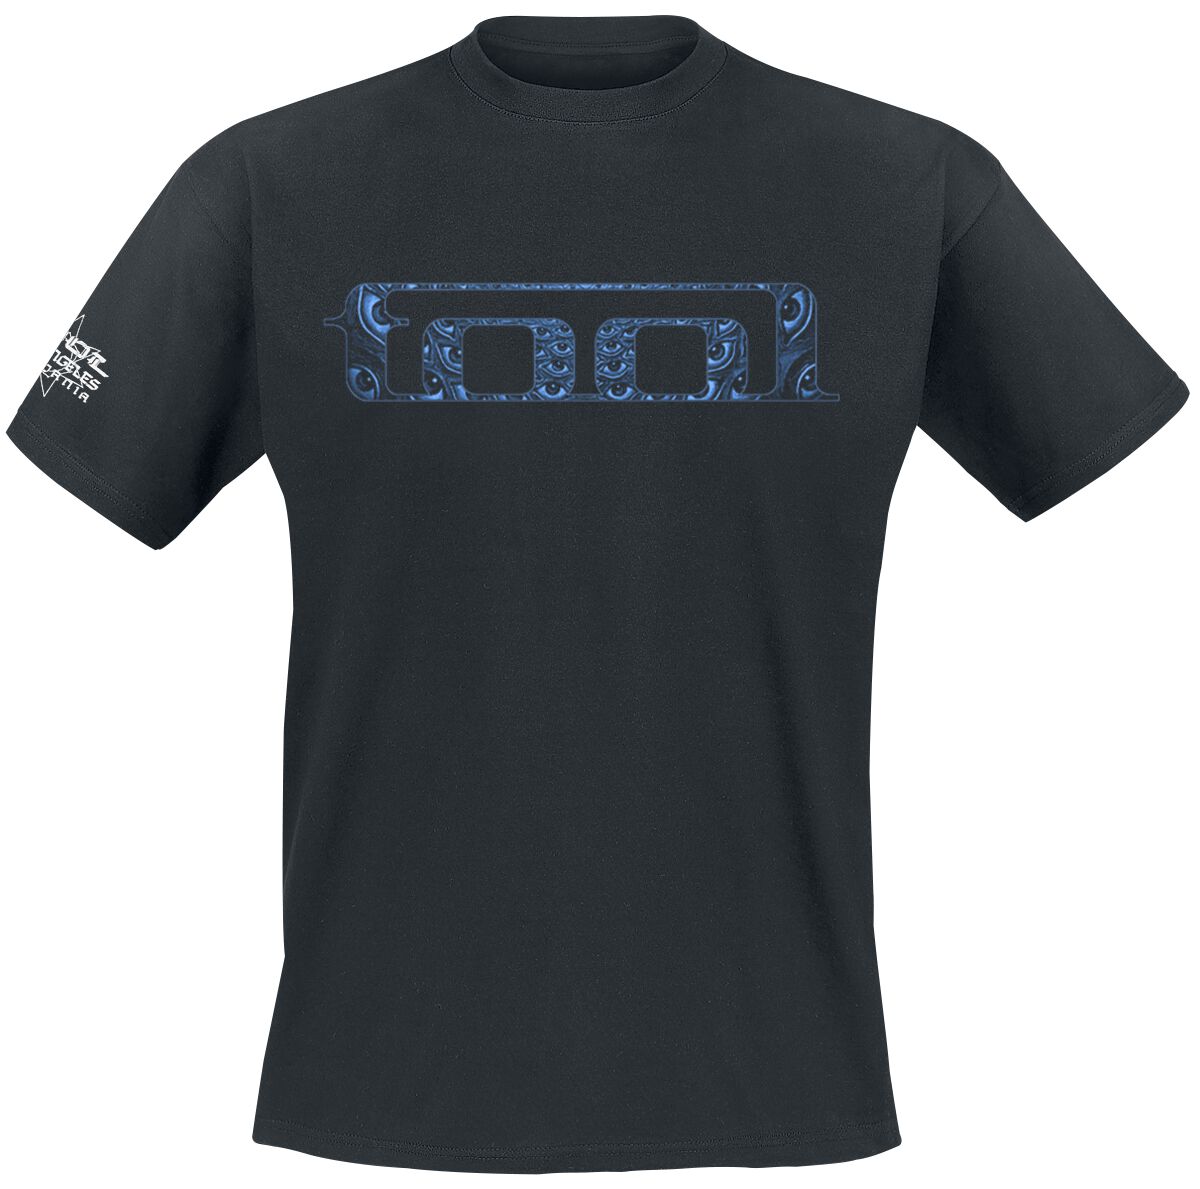 Tool T-Shirt - Blue Spectre - S bis XXL - für Männer - Größe L - schwarz  - Lizenziertes Merchandise!